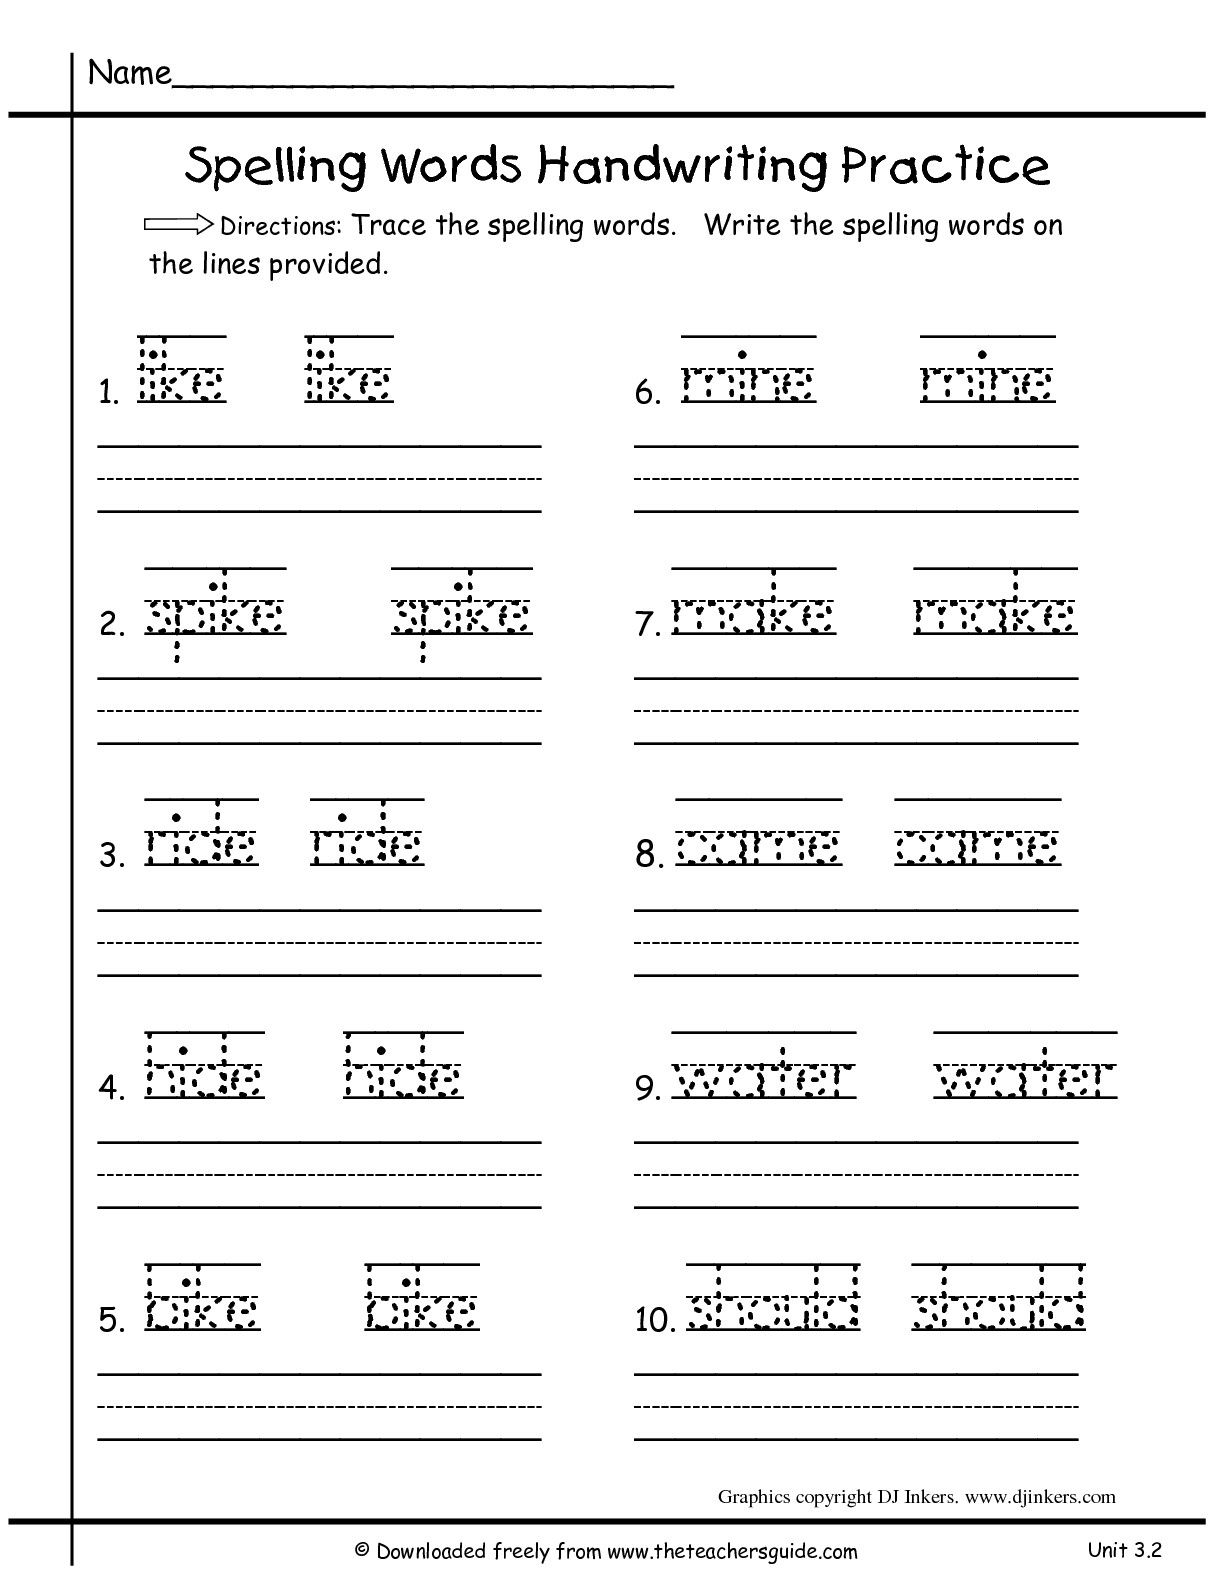 Printables. 1St Grade Spelling Words Worksheets. Lemonlilyfestival - Free Printable Worksheets For 1St Grade Language Arts